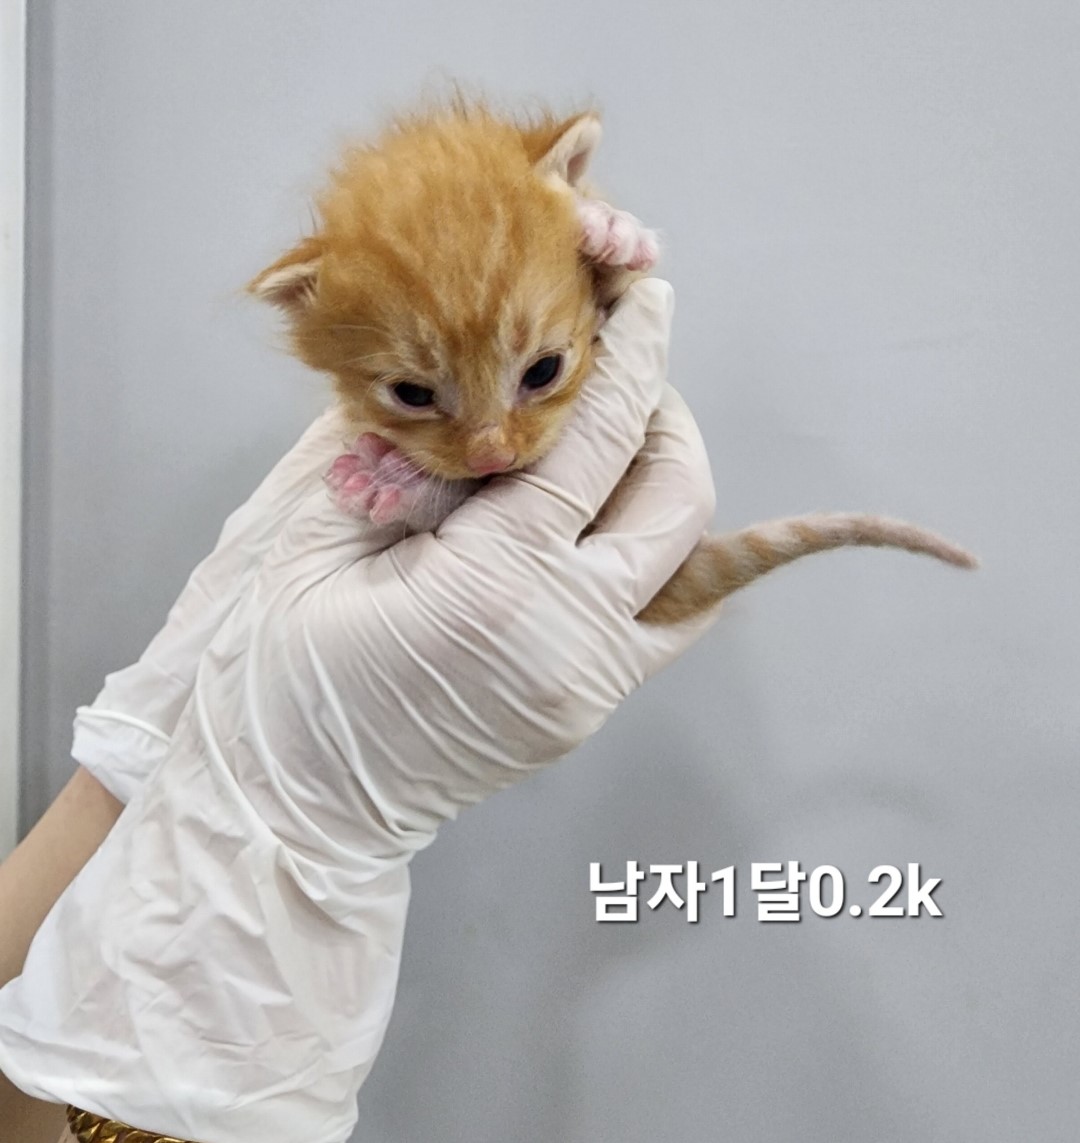 공고 번호가 충북-옥천-2024-00238인 한국 고양이 동물 사진